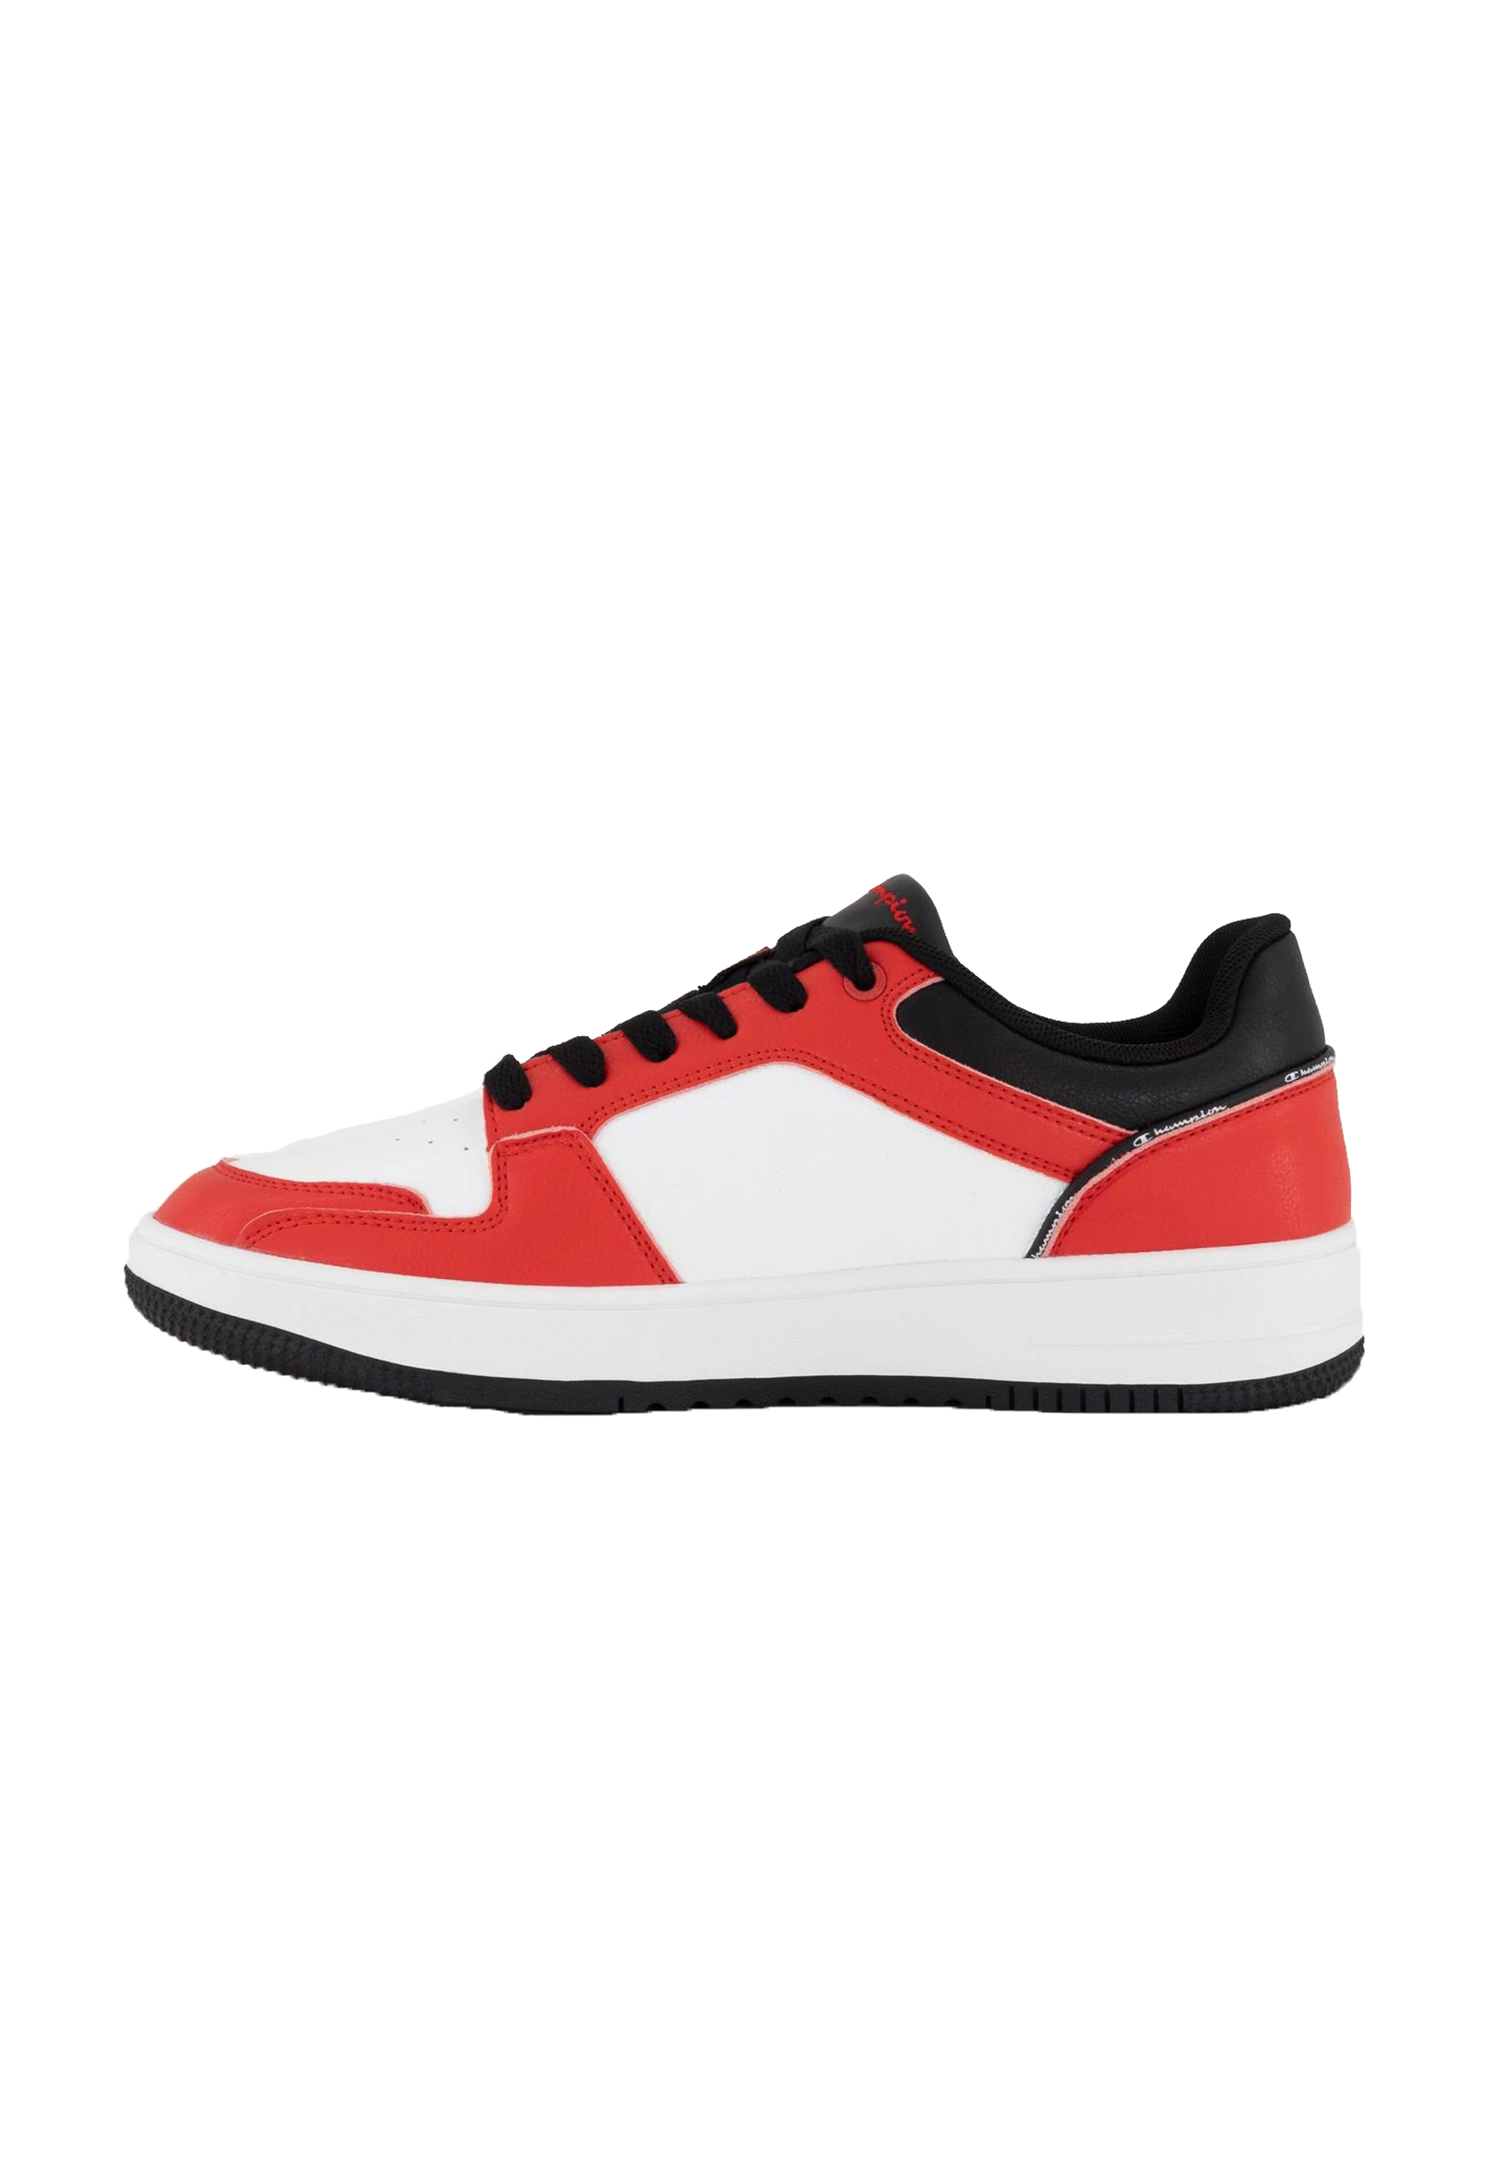 Champion REBOUND 2.0 LOW Herren Sneaker S21906-CHA-RS001 weiß/schwarz/rot